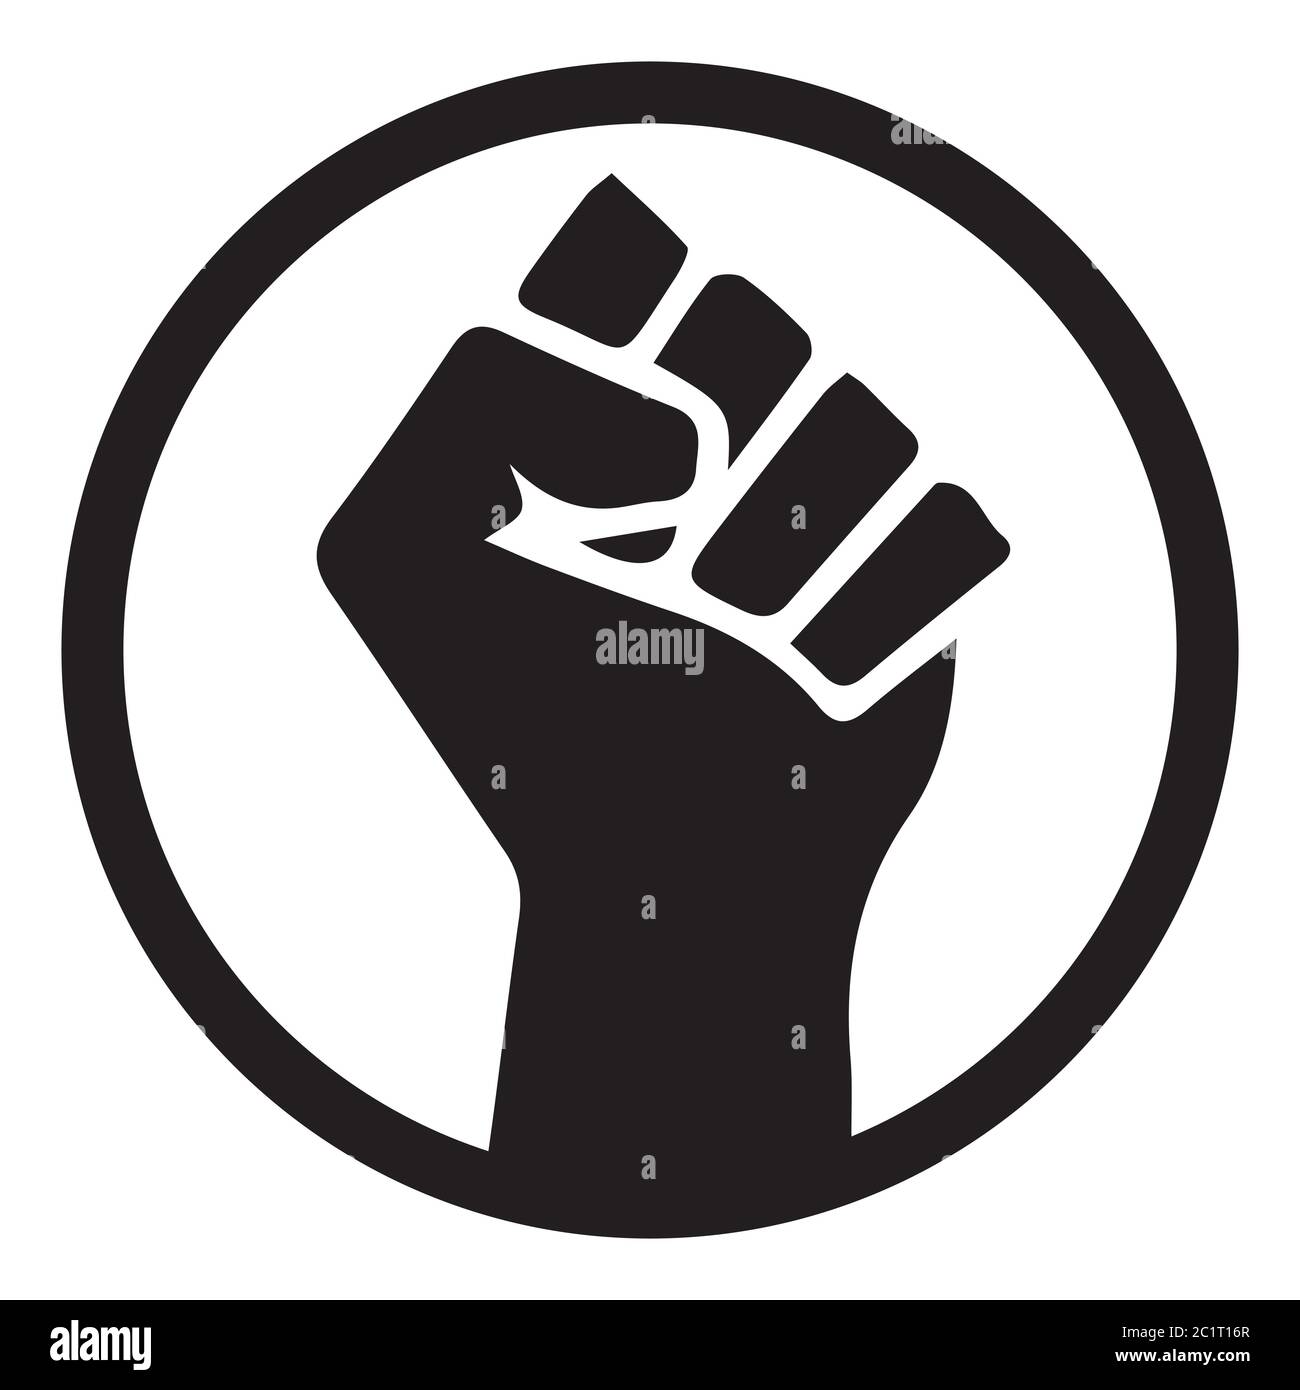 Le vite nere contano. Illustrazione in bianco e nero che raffigura BLM Fist in Circle. Vettore EPS Illustrazione Vettoriale